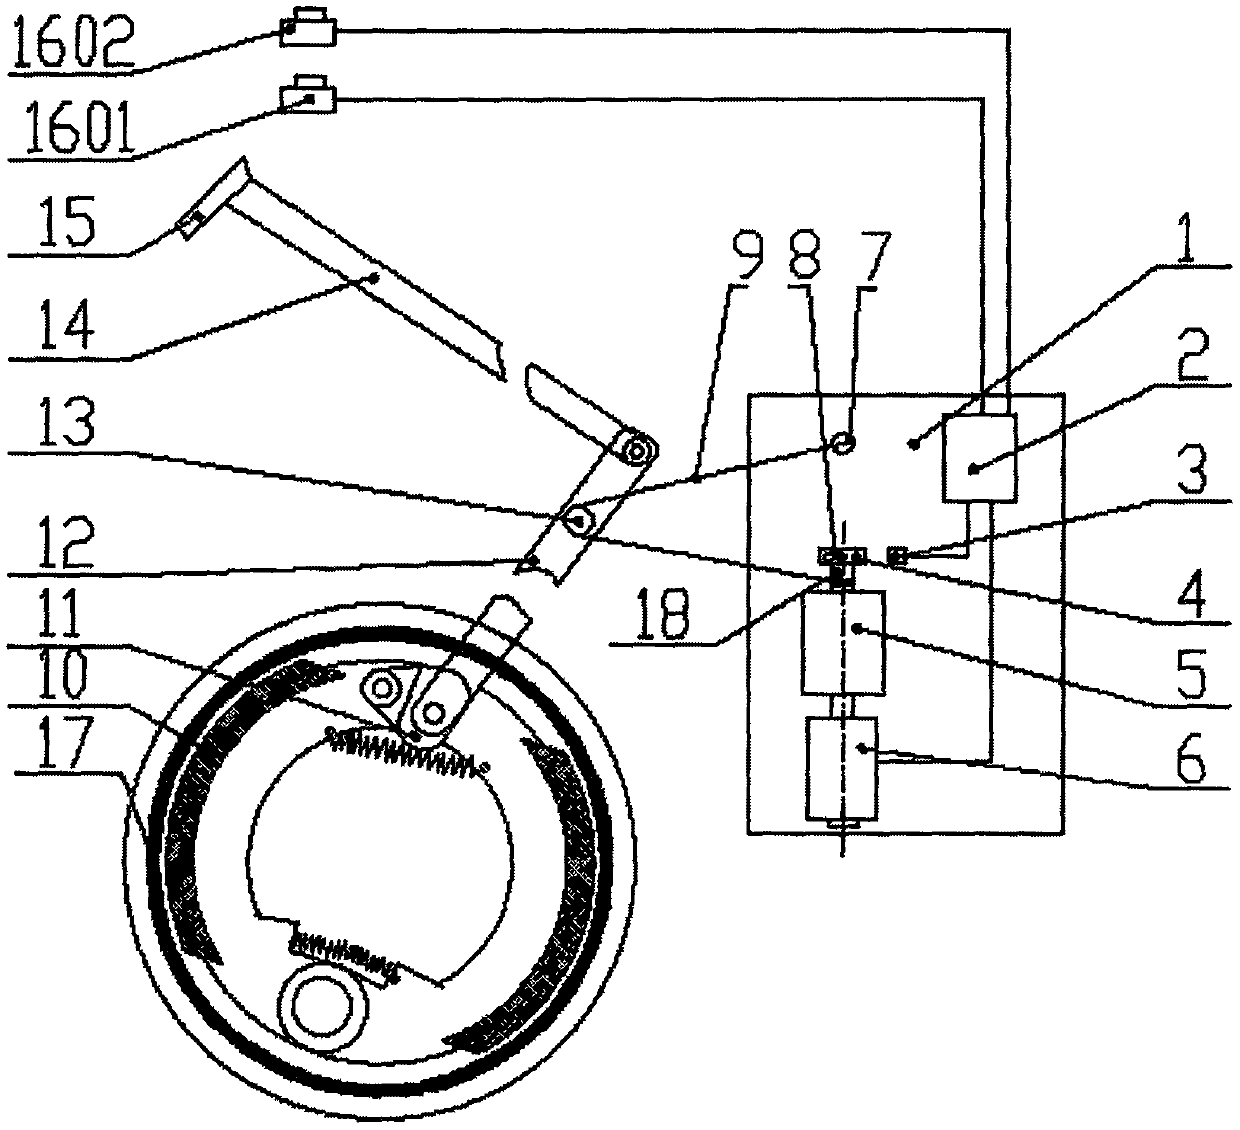 Braking mechanism of golf cart